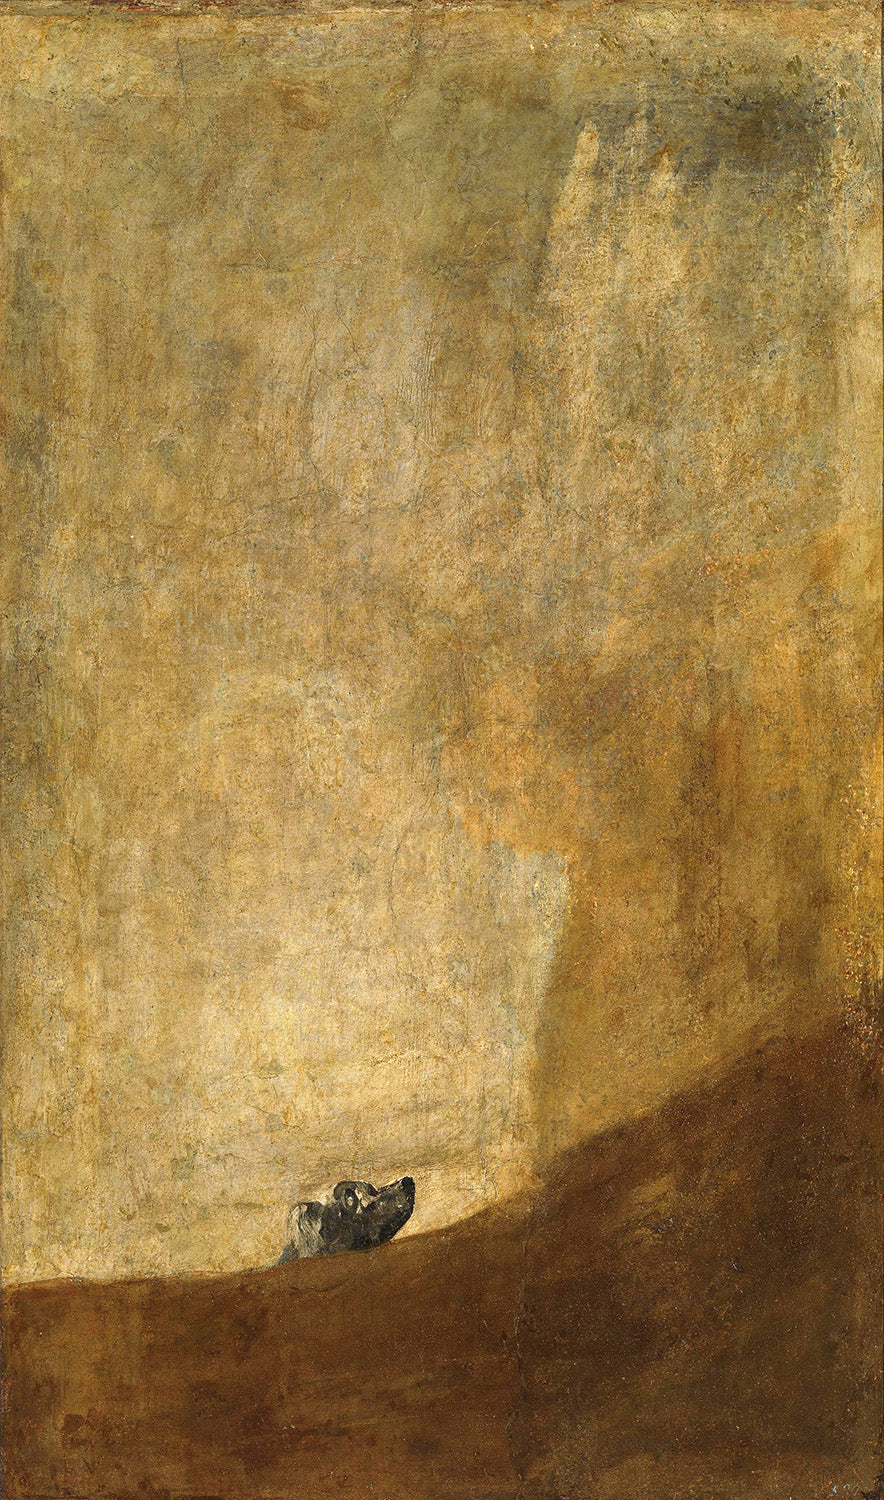 (El perro), The Dog by Francisco de Goya Art Print